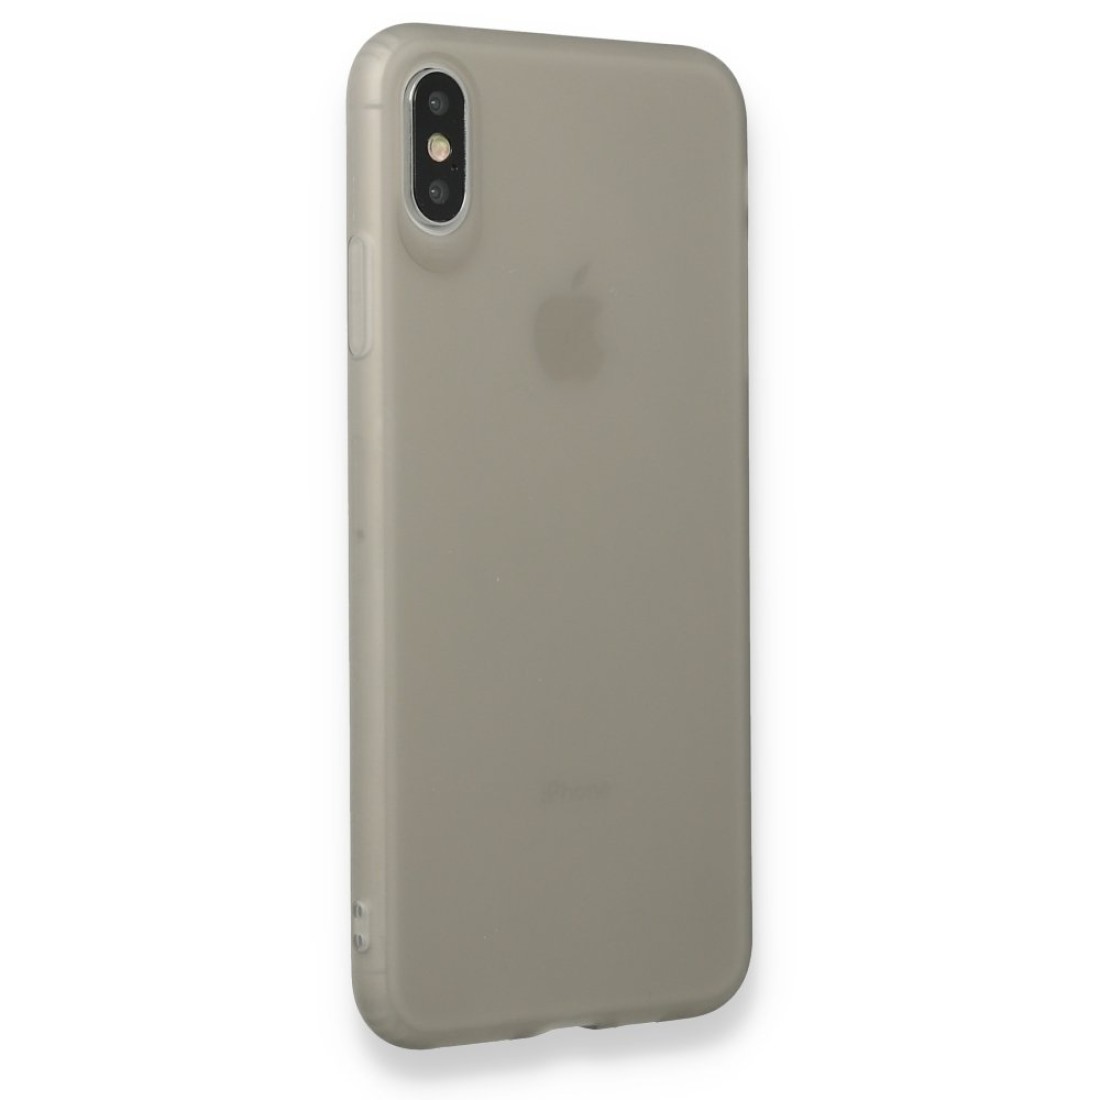 Apple iPhone XS Max Kılıf Hopi Silikon - Füme